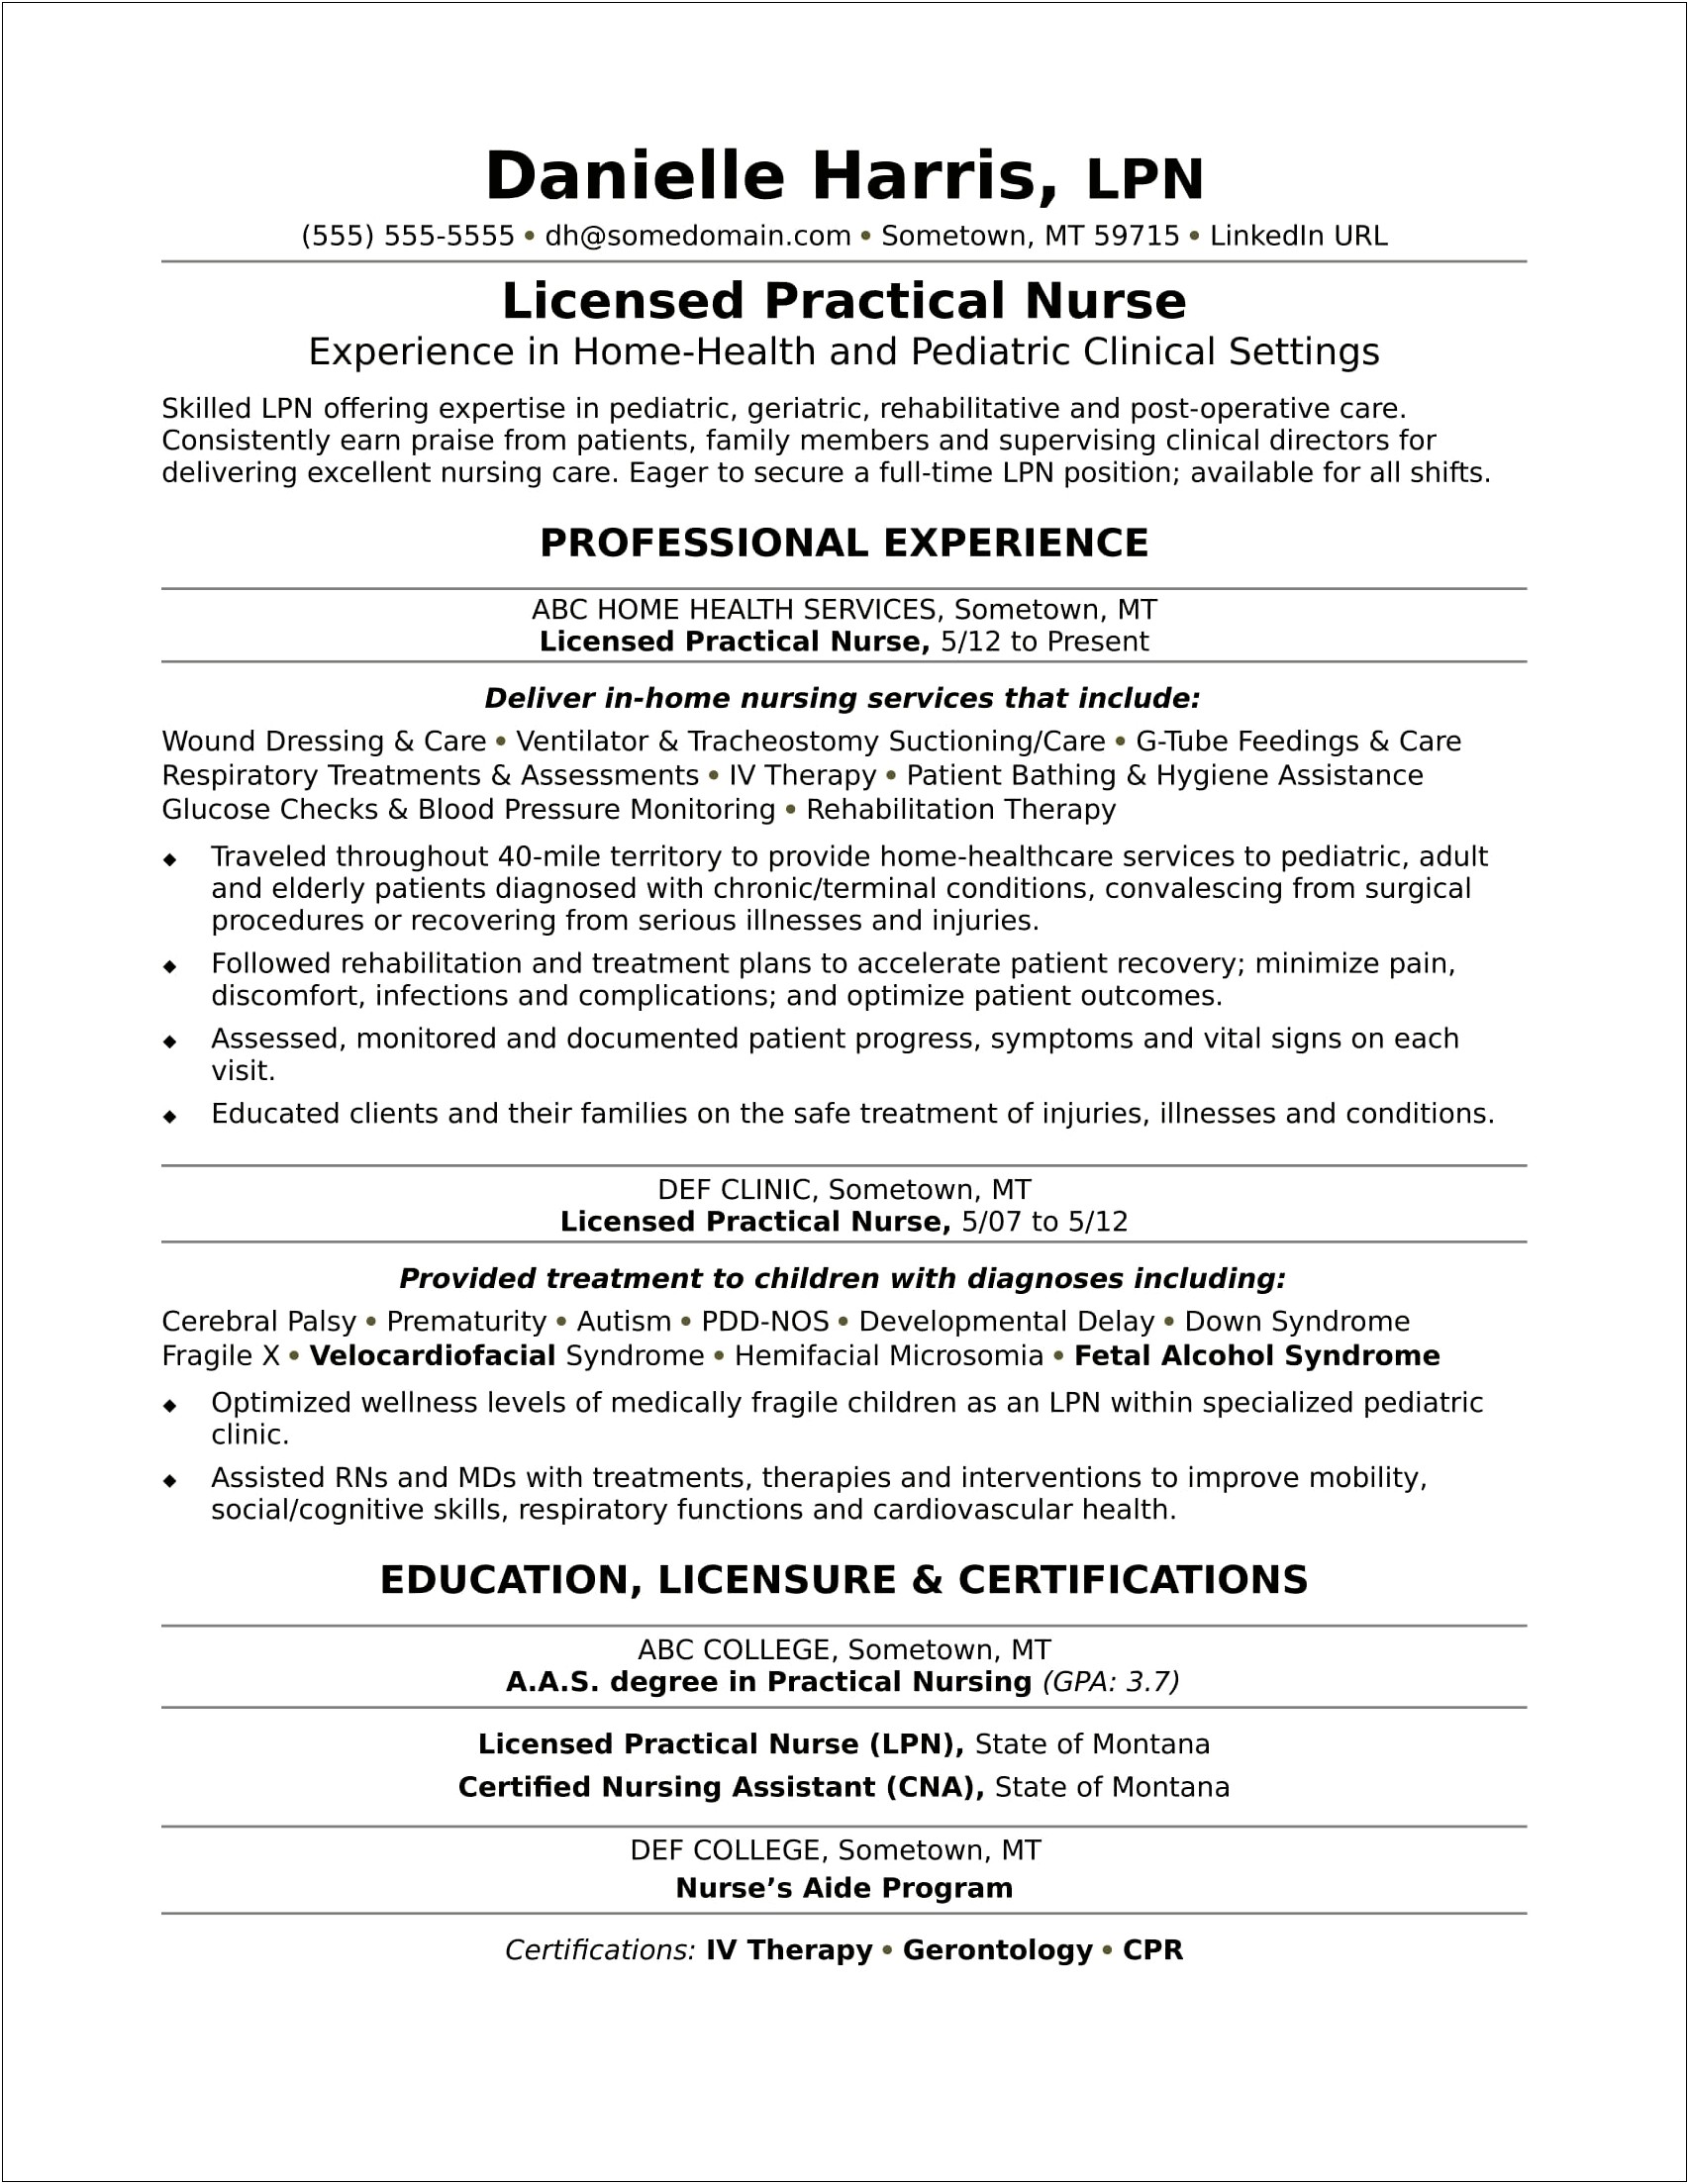 Wound Care Nurse Resume Objective